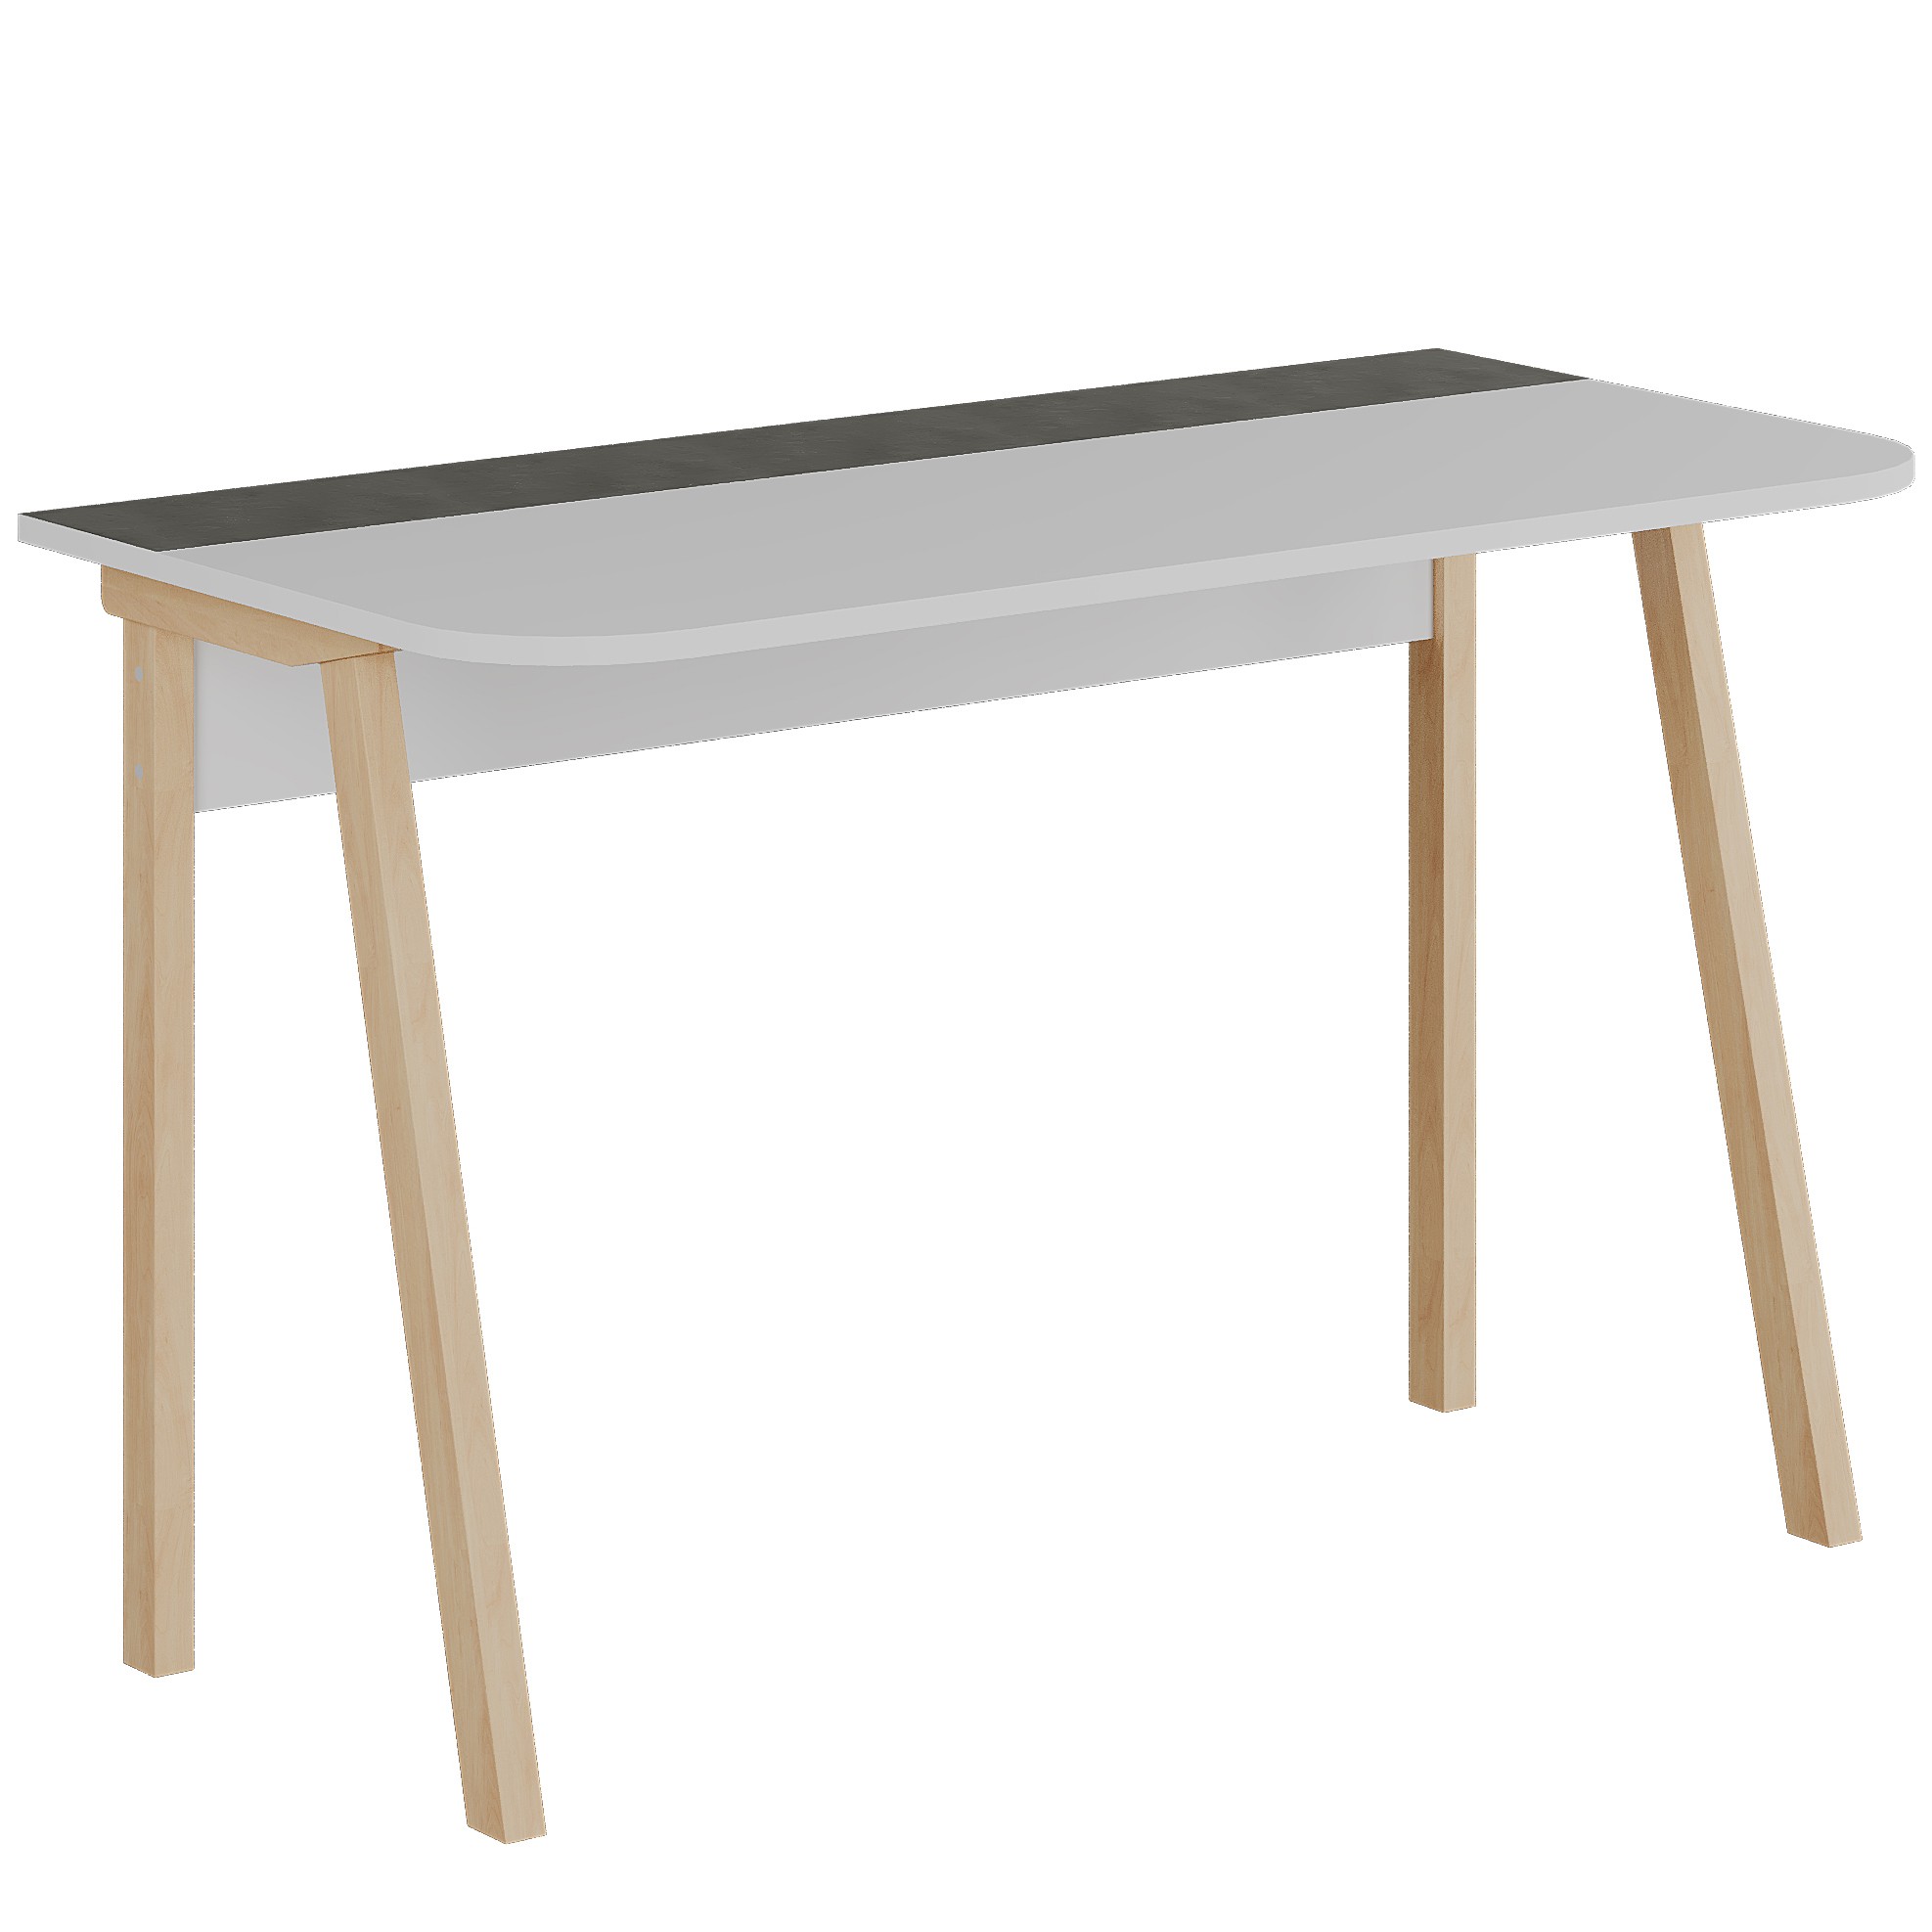 Luton Working Table White - Retro Grey